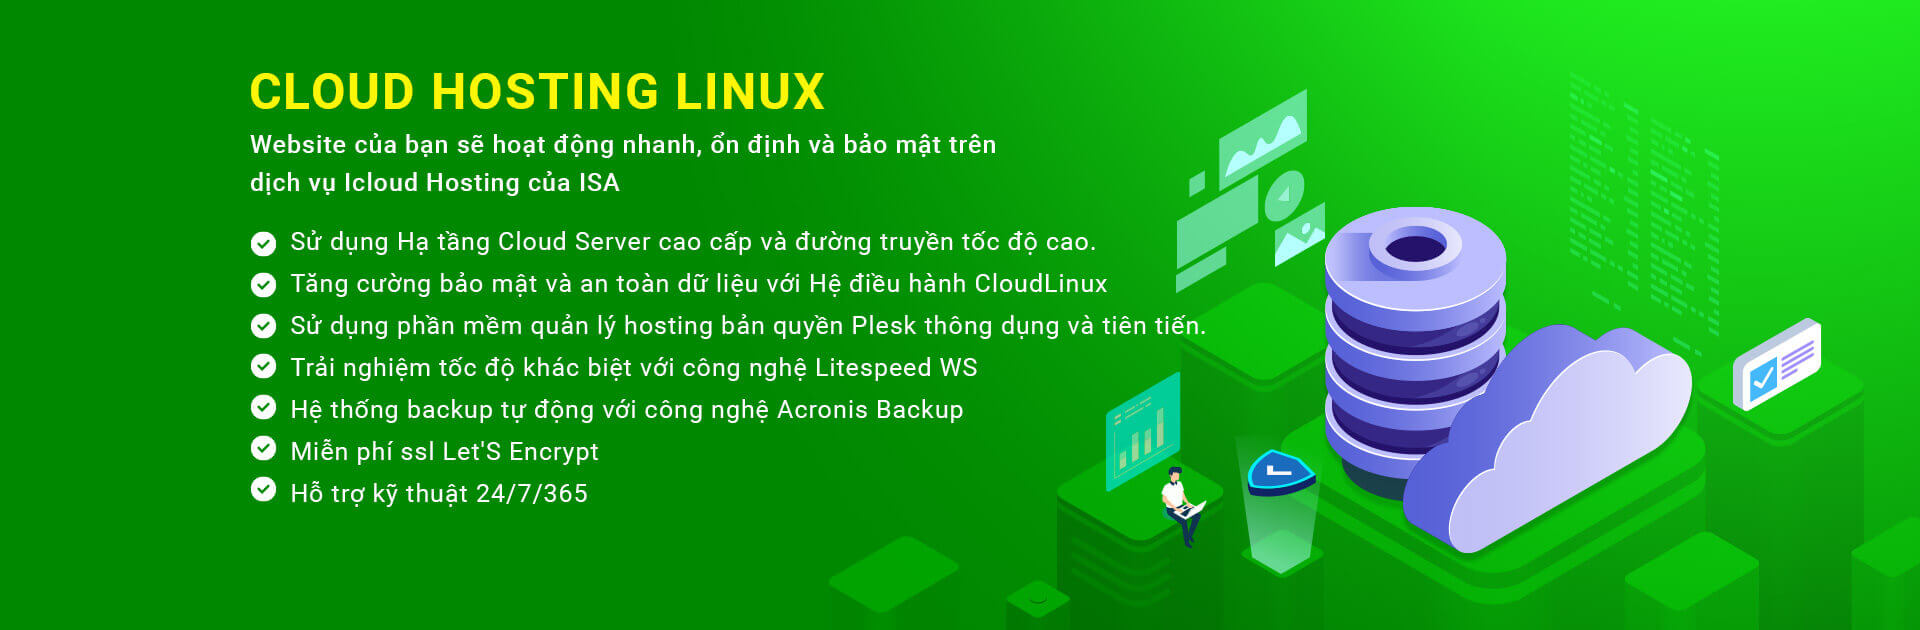 cloud hosting linux